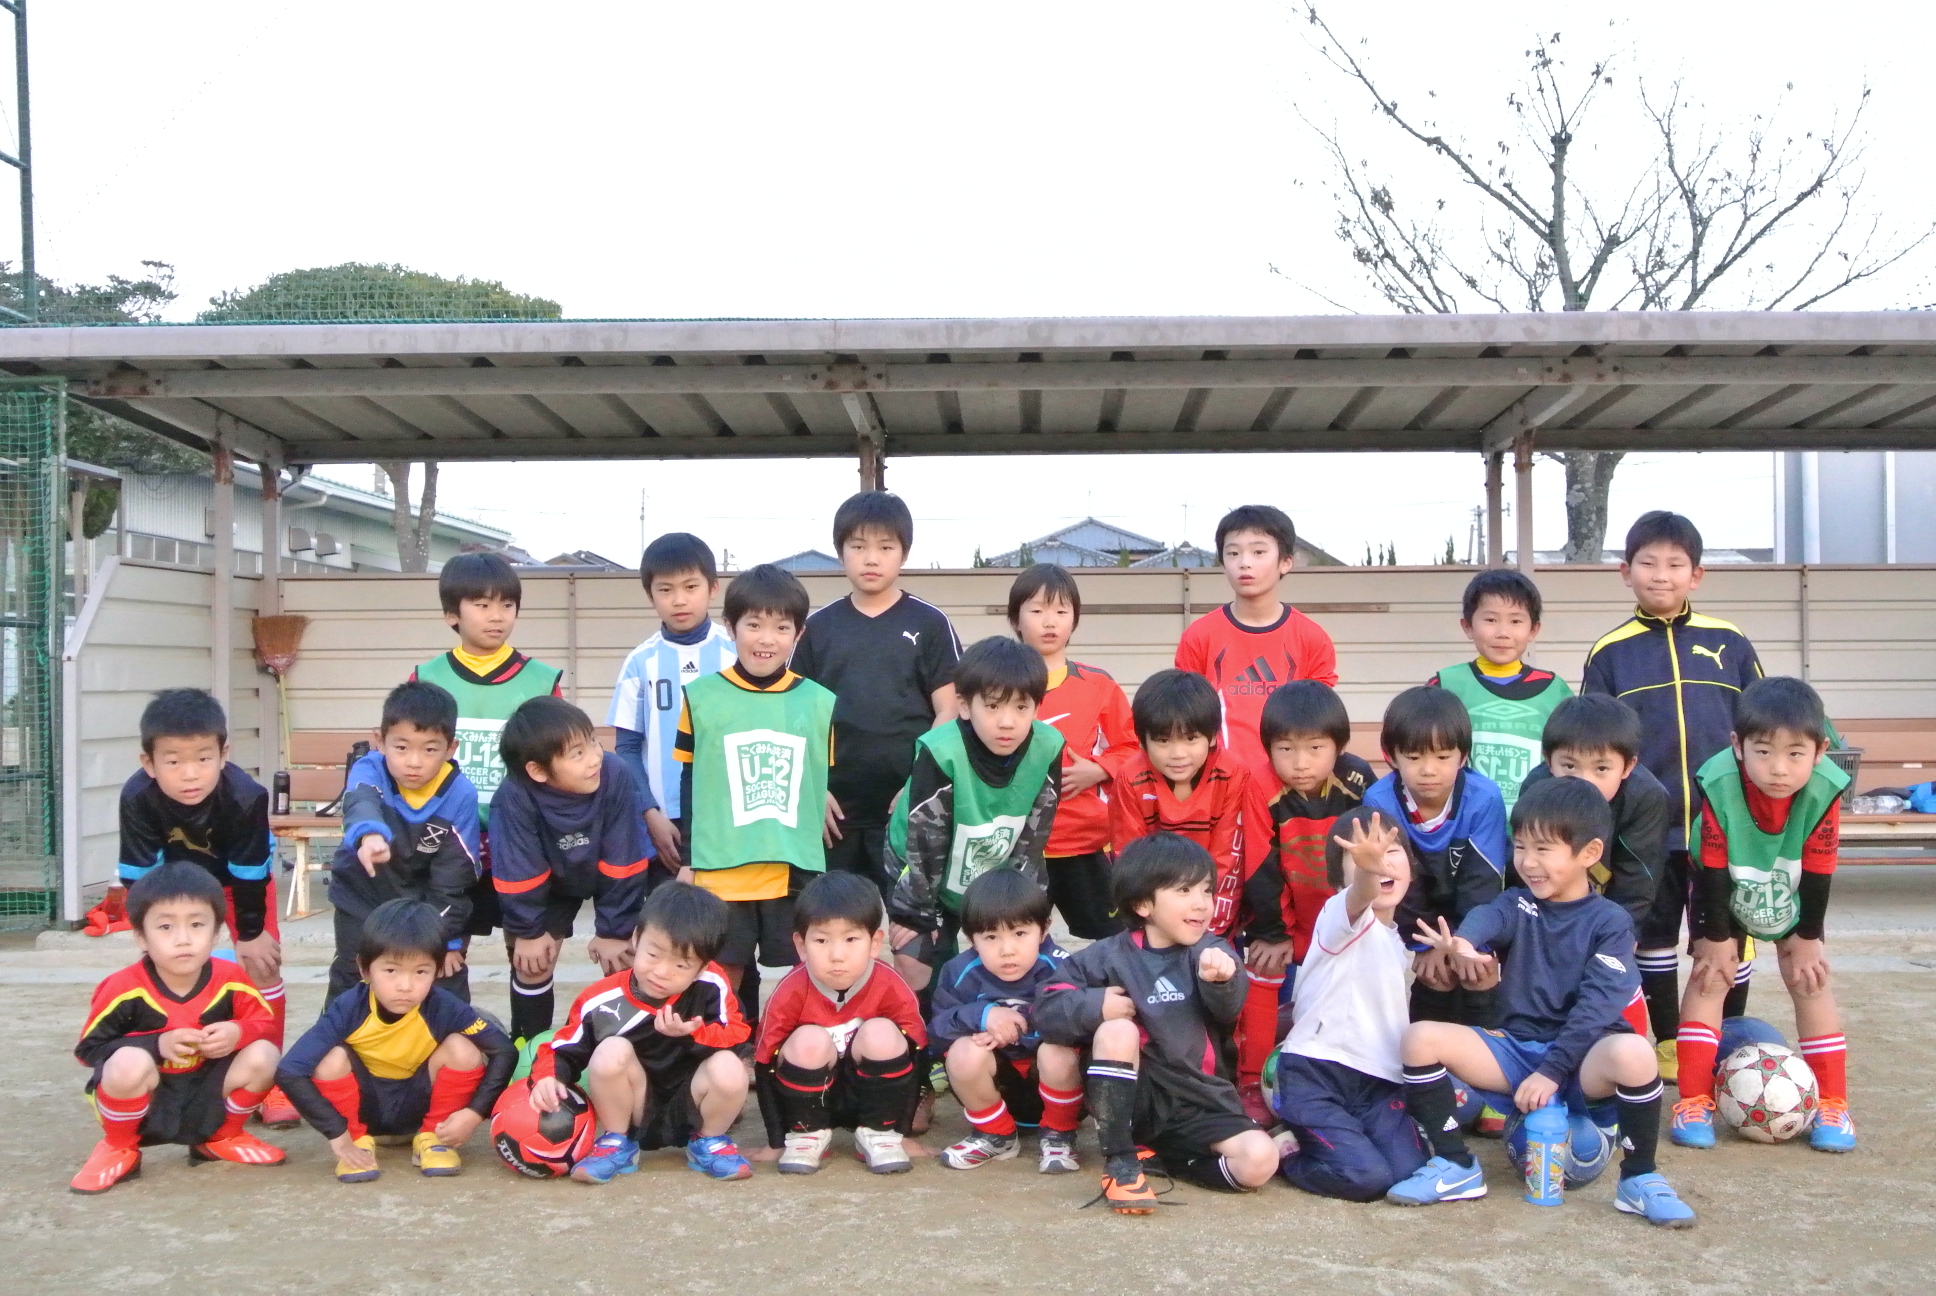 熊本県 ブレイズ熊本 サッカースクール 月出 Blaze Kumamoto Soccer School スポサーチ